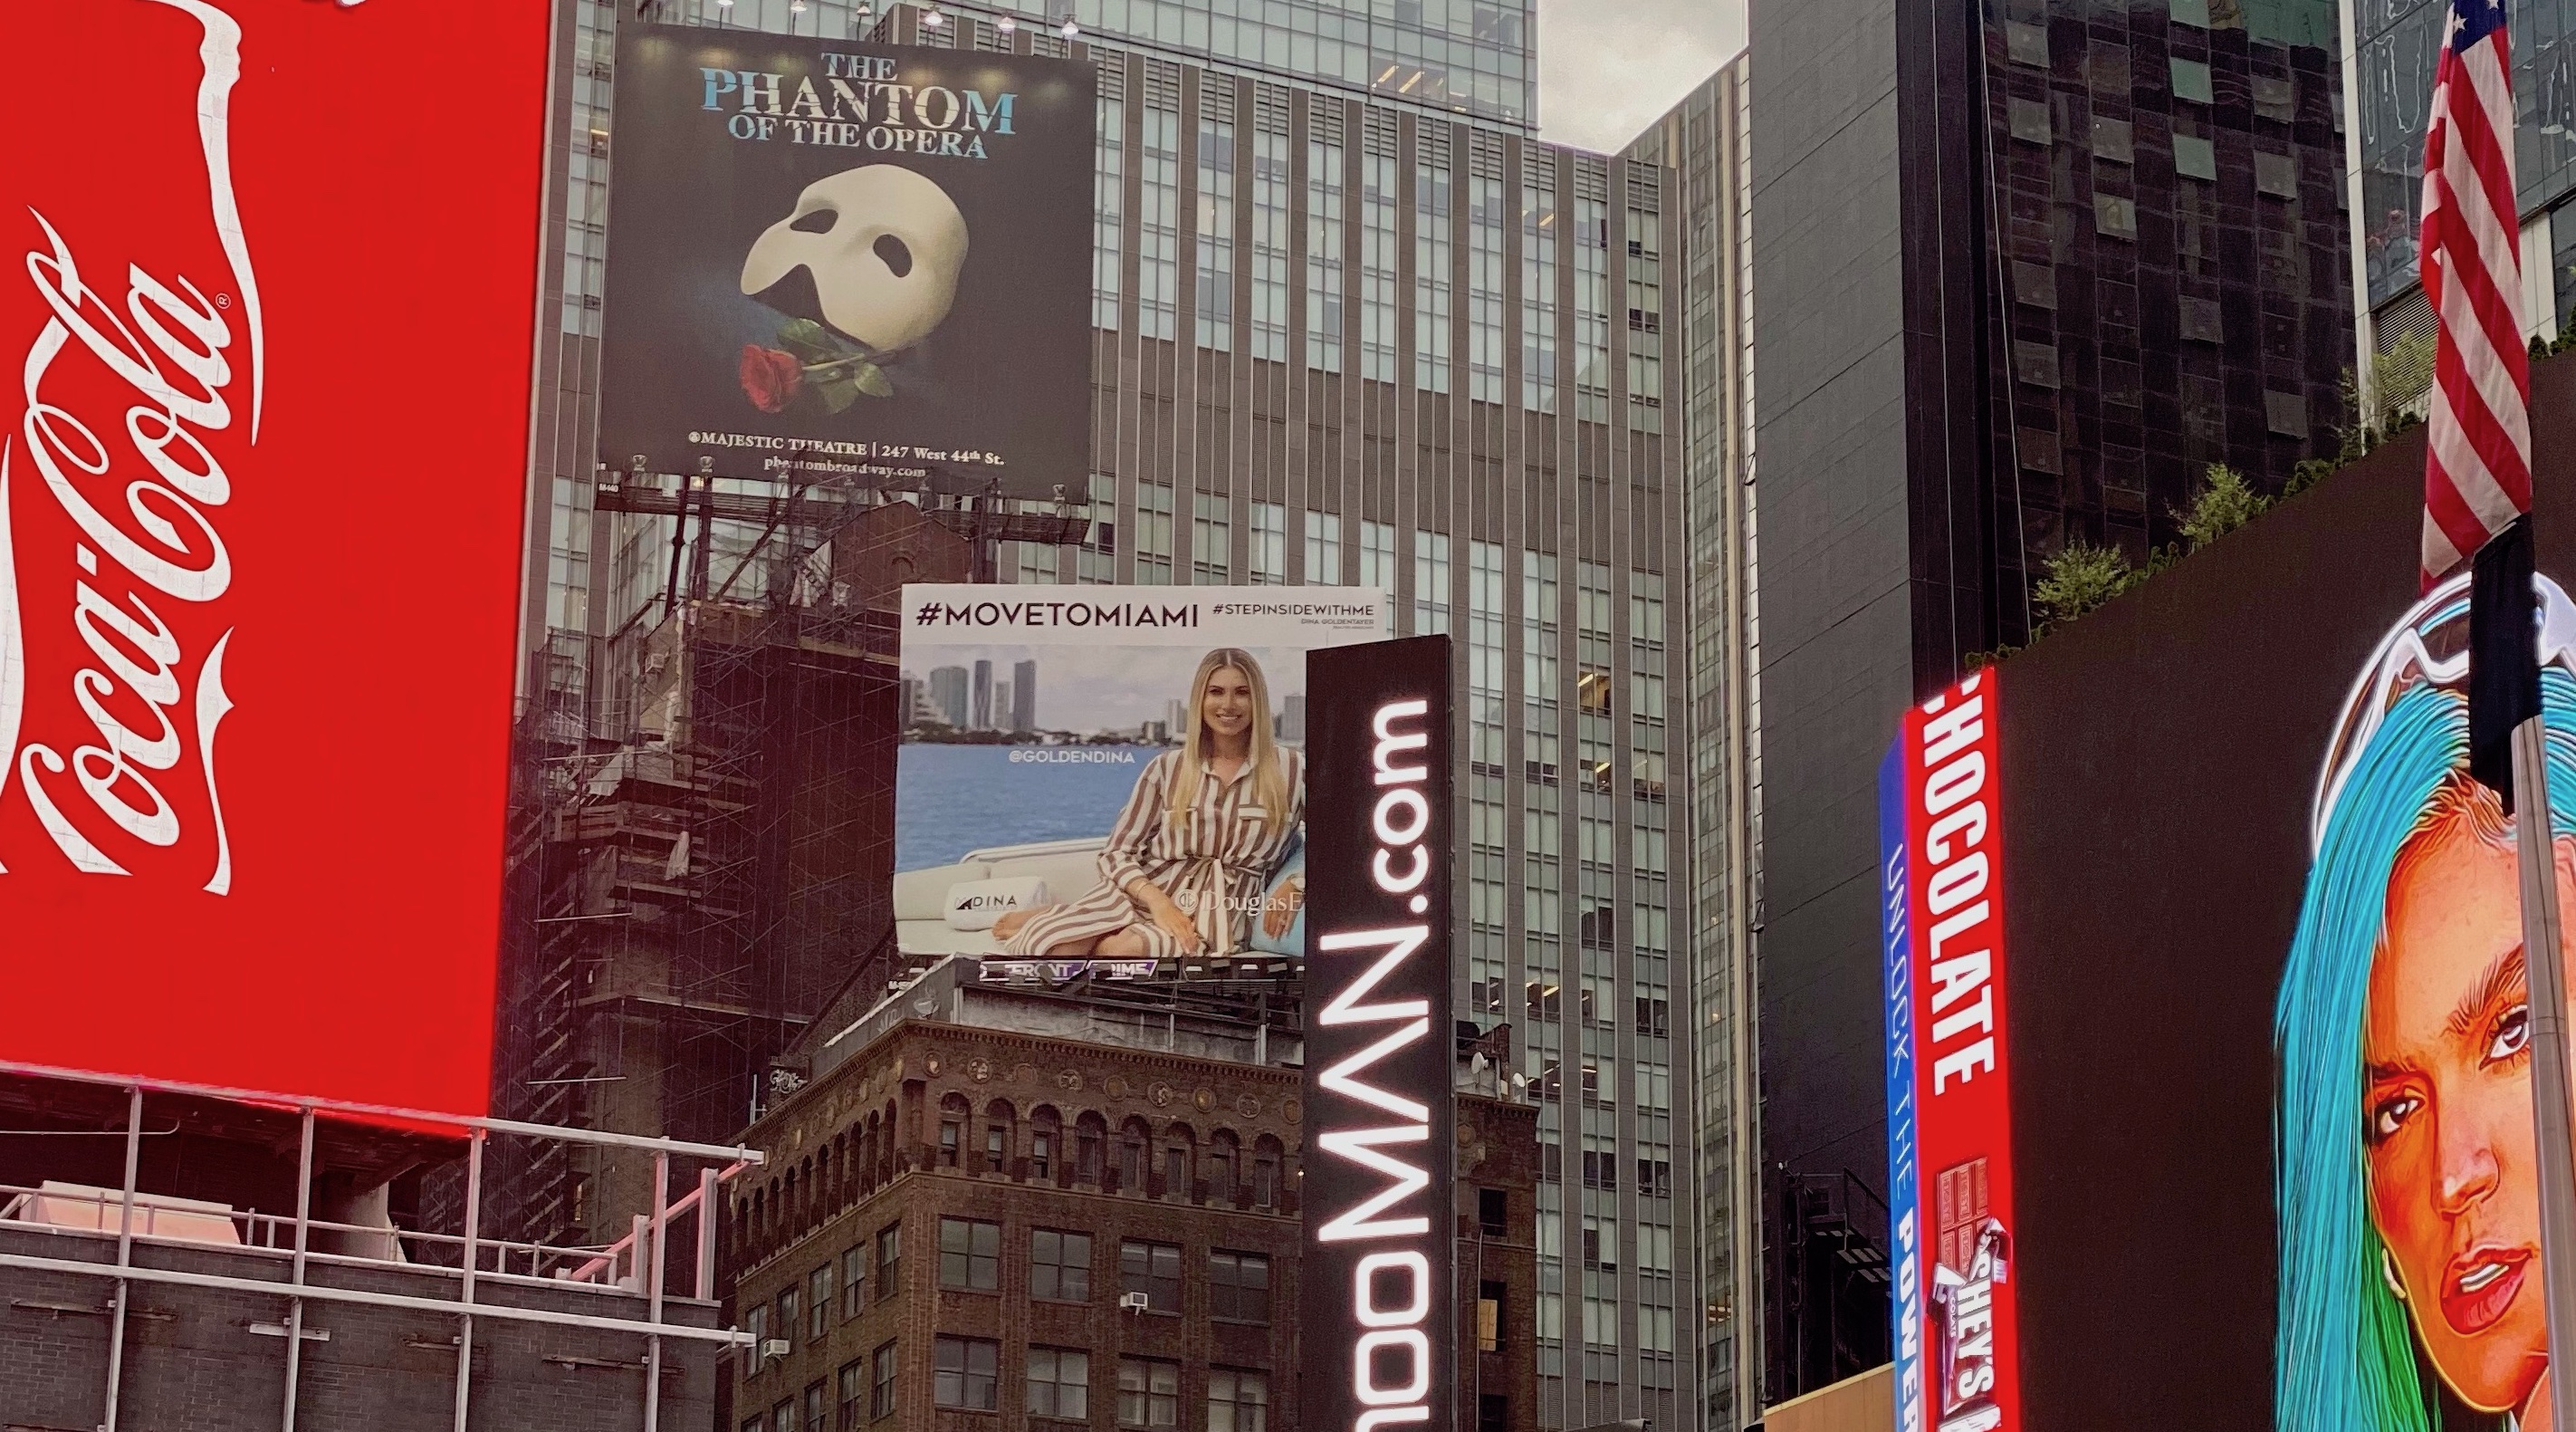 Billboard_Times_Square.jpeg